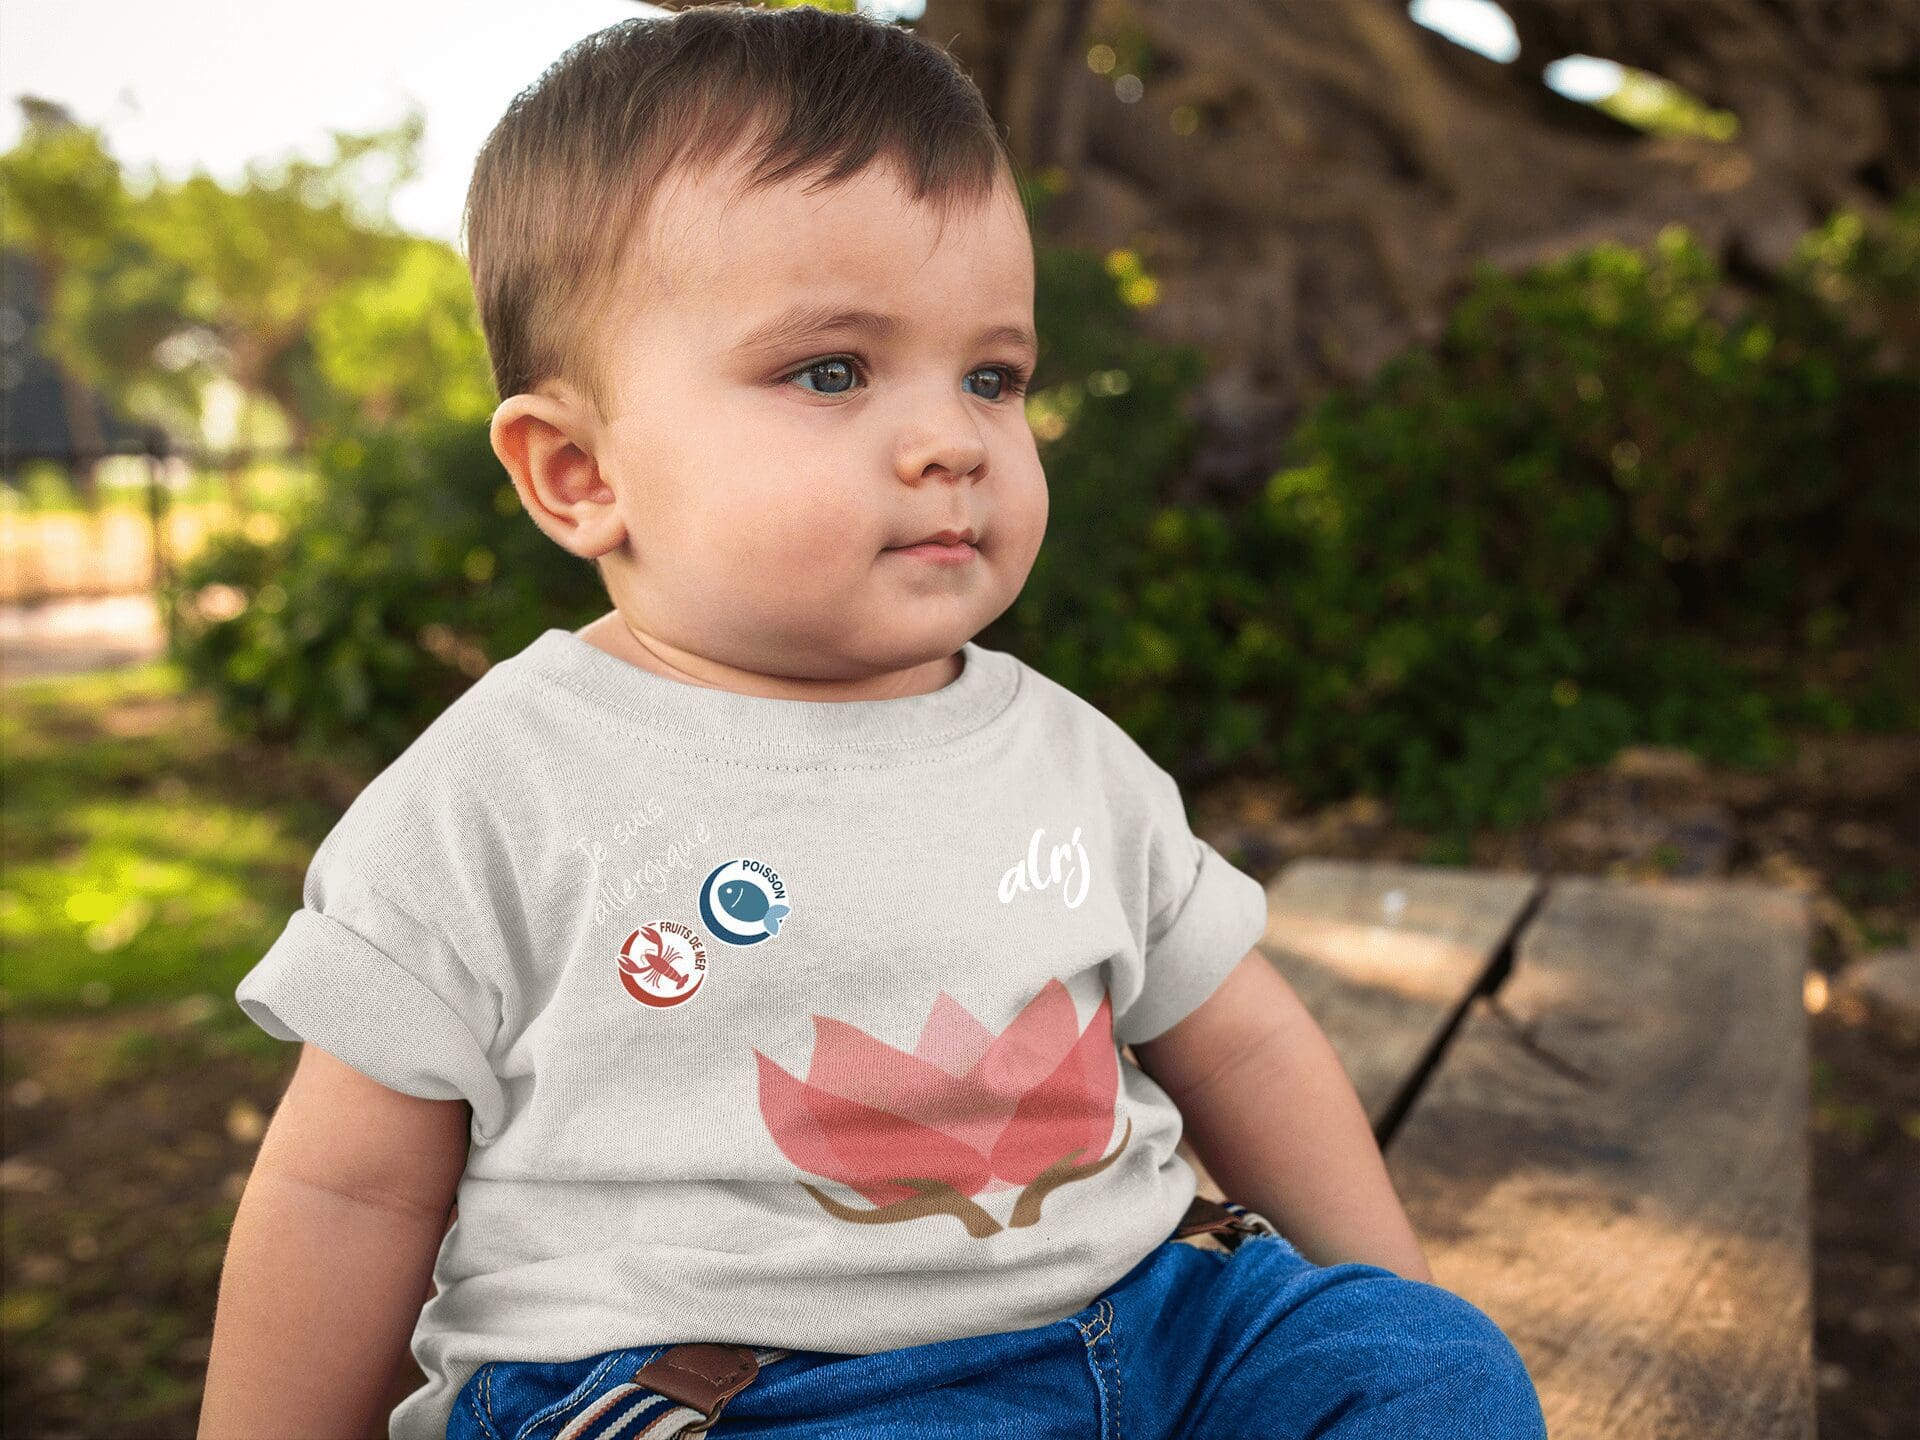 bébé avec allergie alimentaire en t-shirt alrj lotus